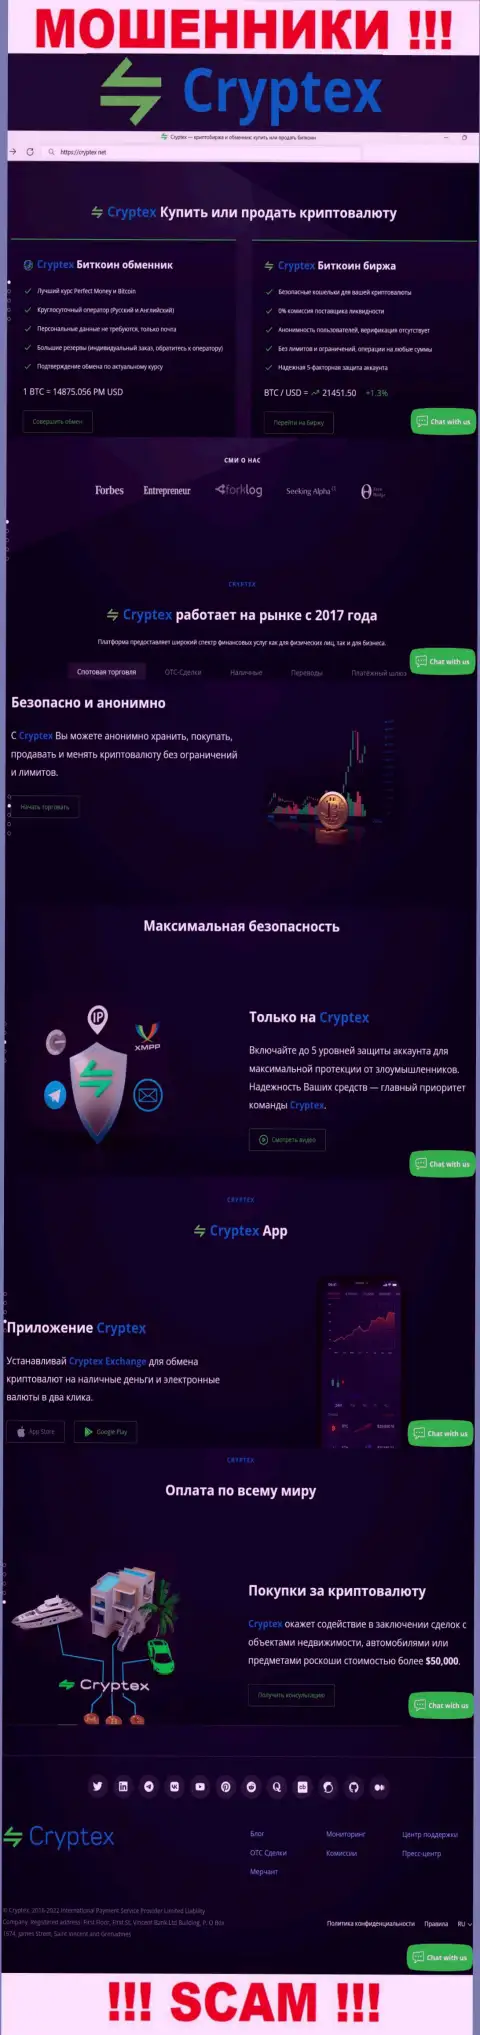 Скрин официального веб-портала мошеннической организации Криптекс Нет